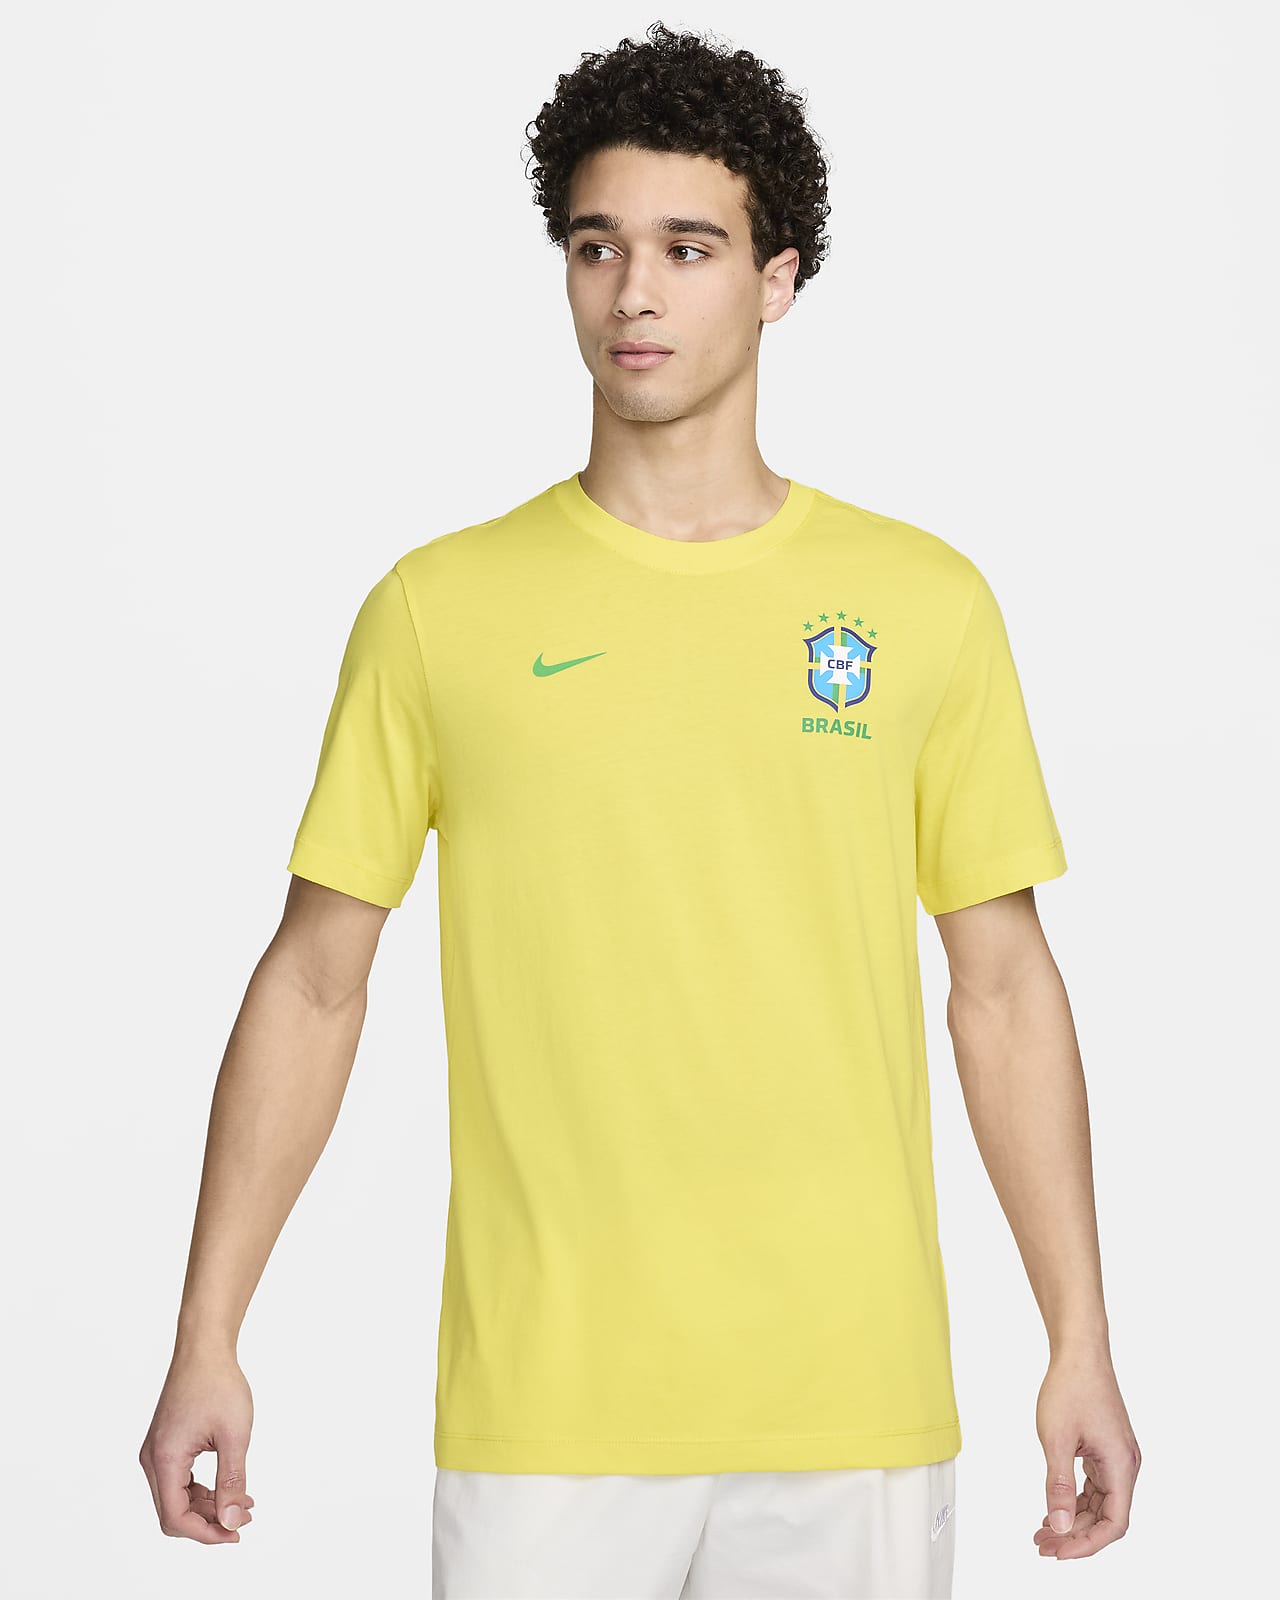 Playera de fútbol Nike para hombre Brazil Essential